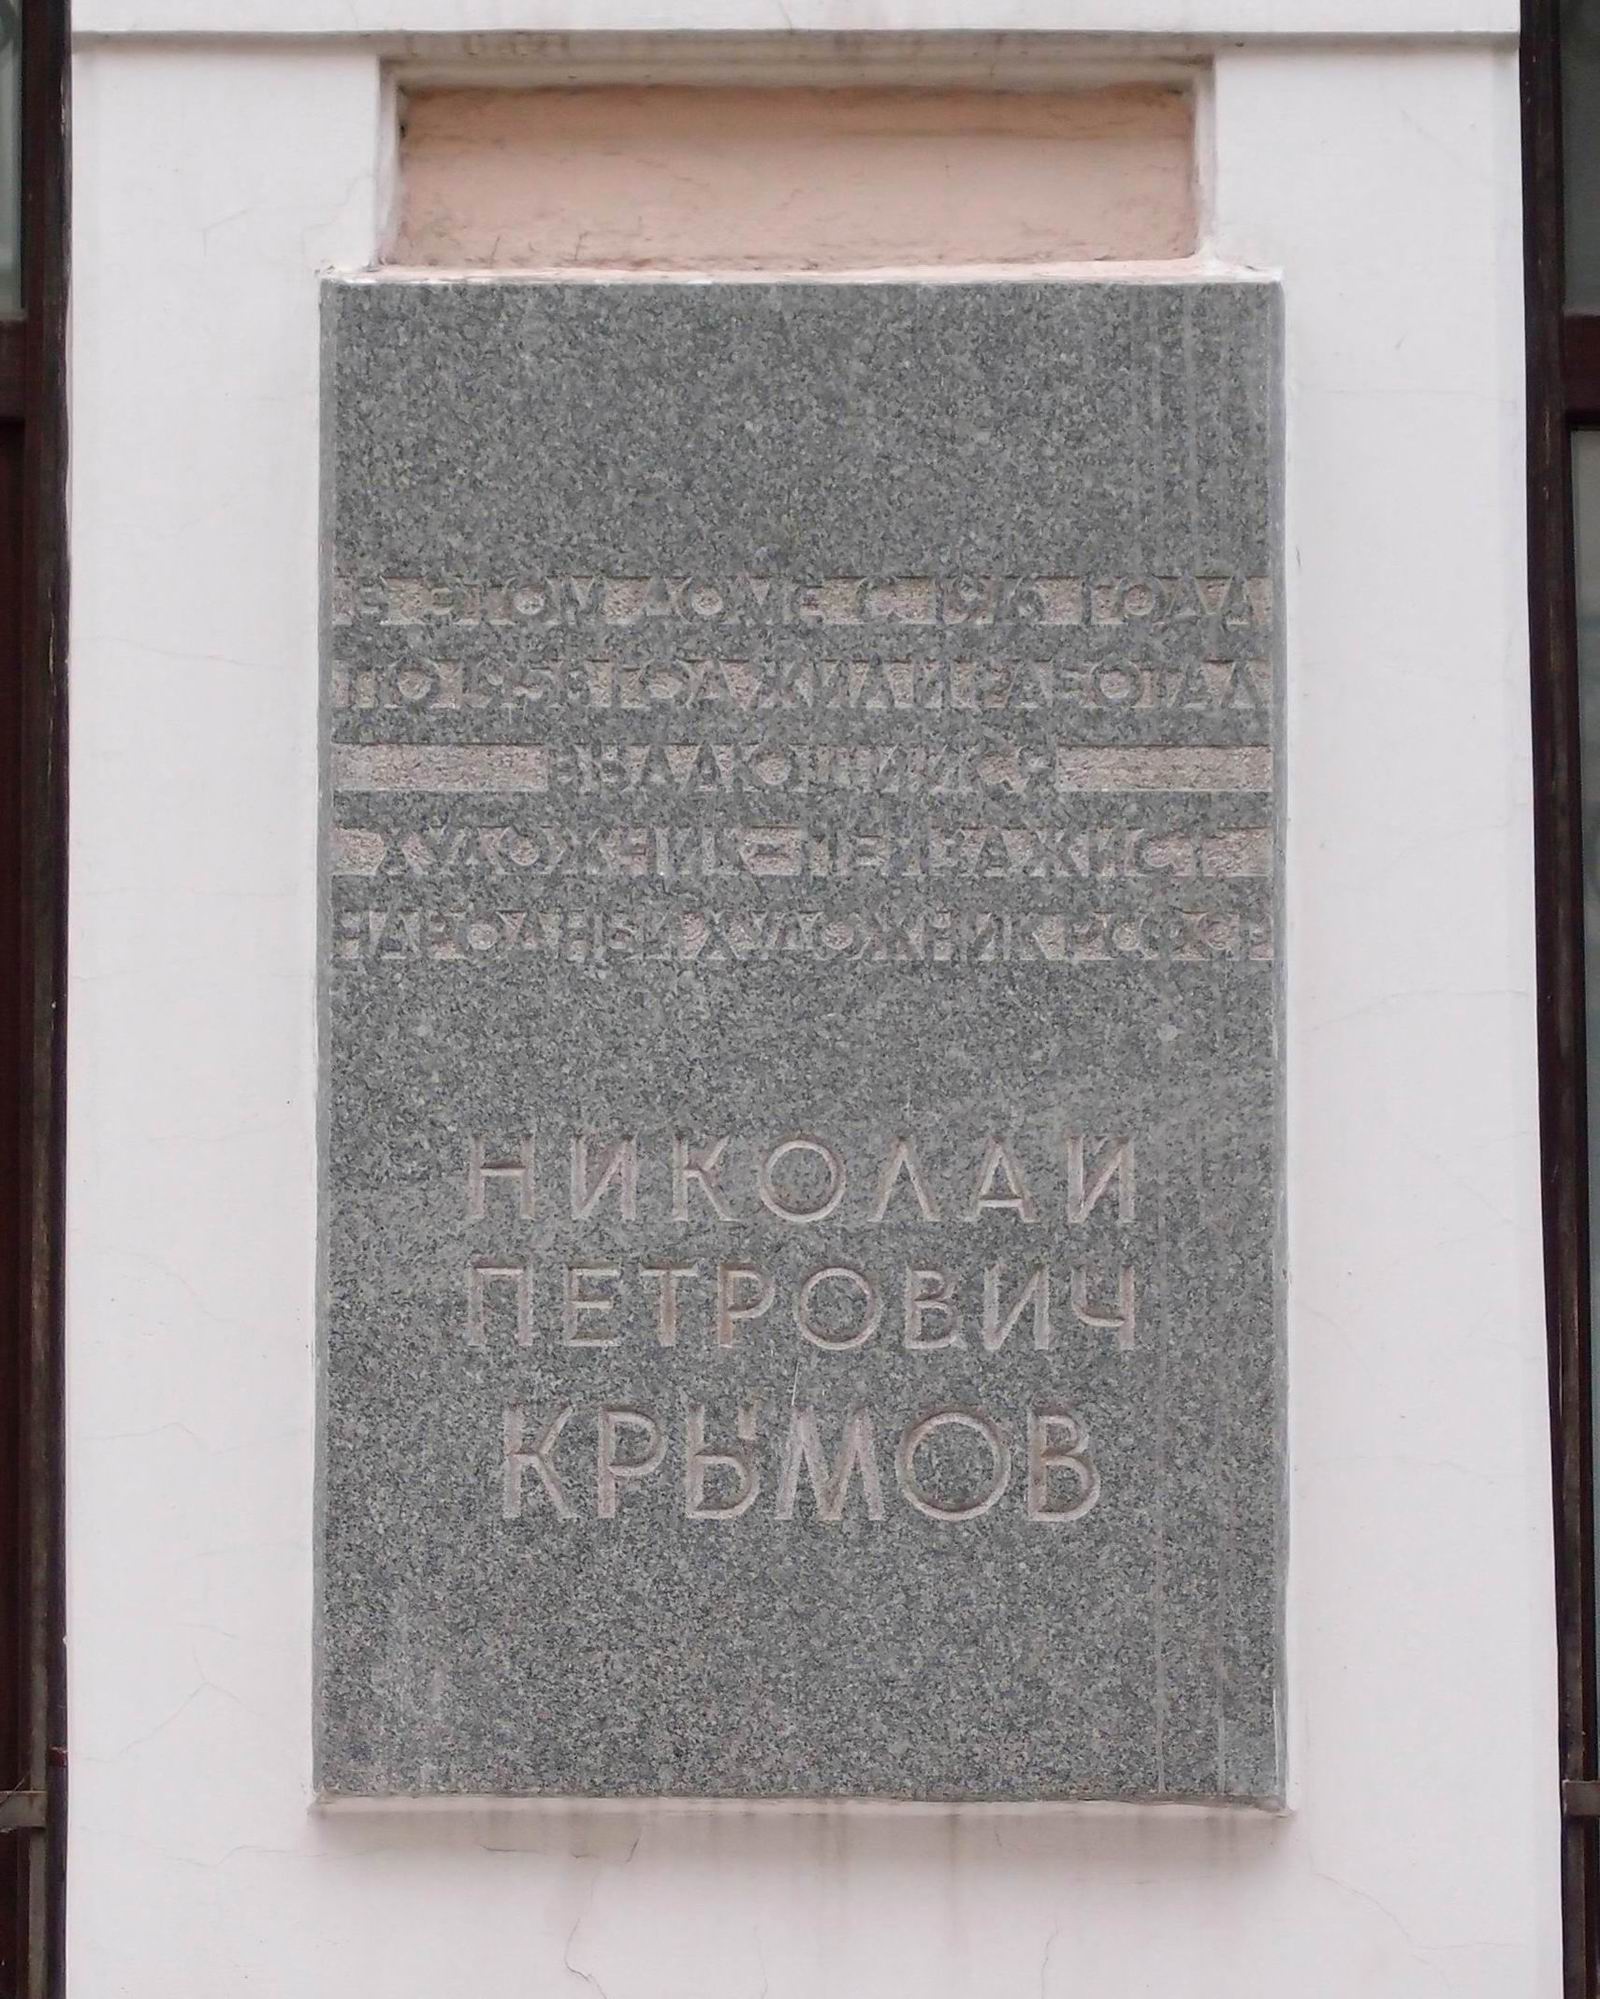 Мемориальная доска Крымова Н.П. (1884–1958), арх. Г.И.Гаврилов, в Сеченовском переулке, дом 8, открыта 26.5.1969.